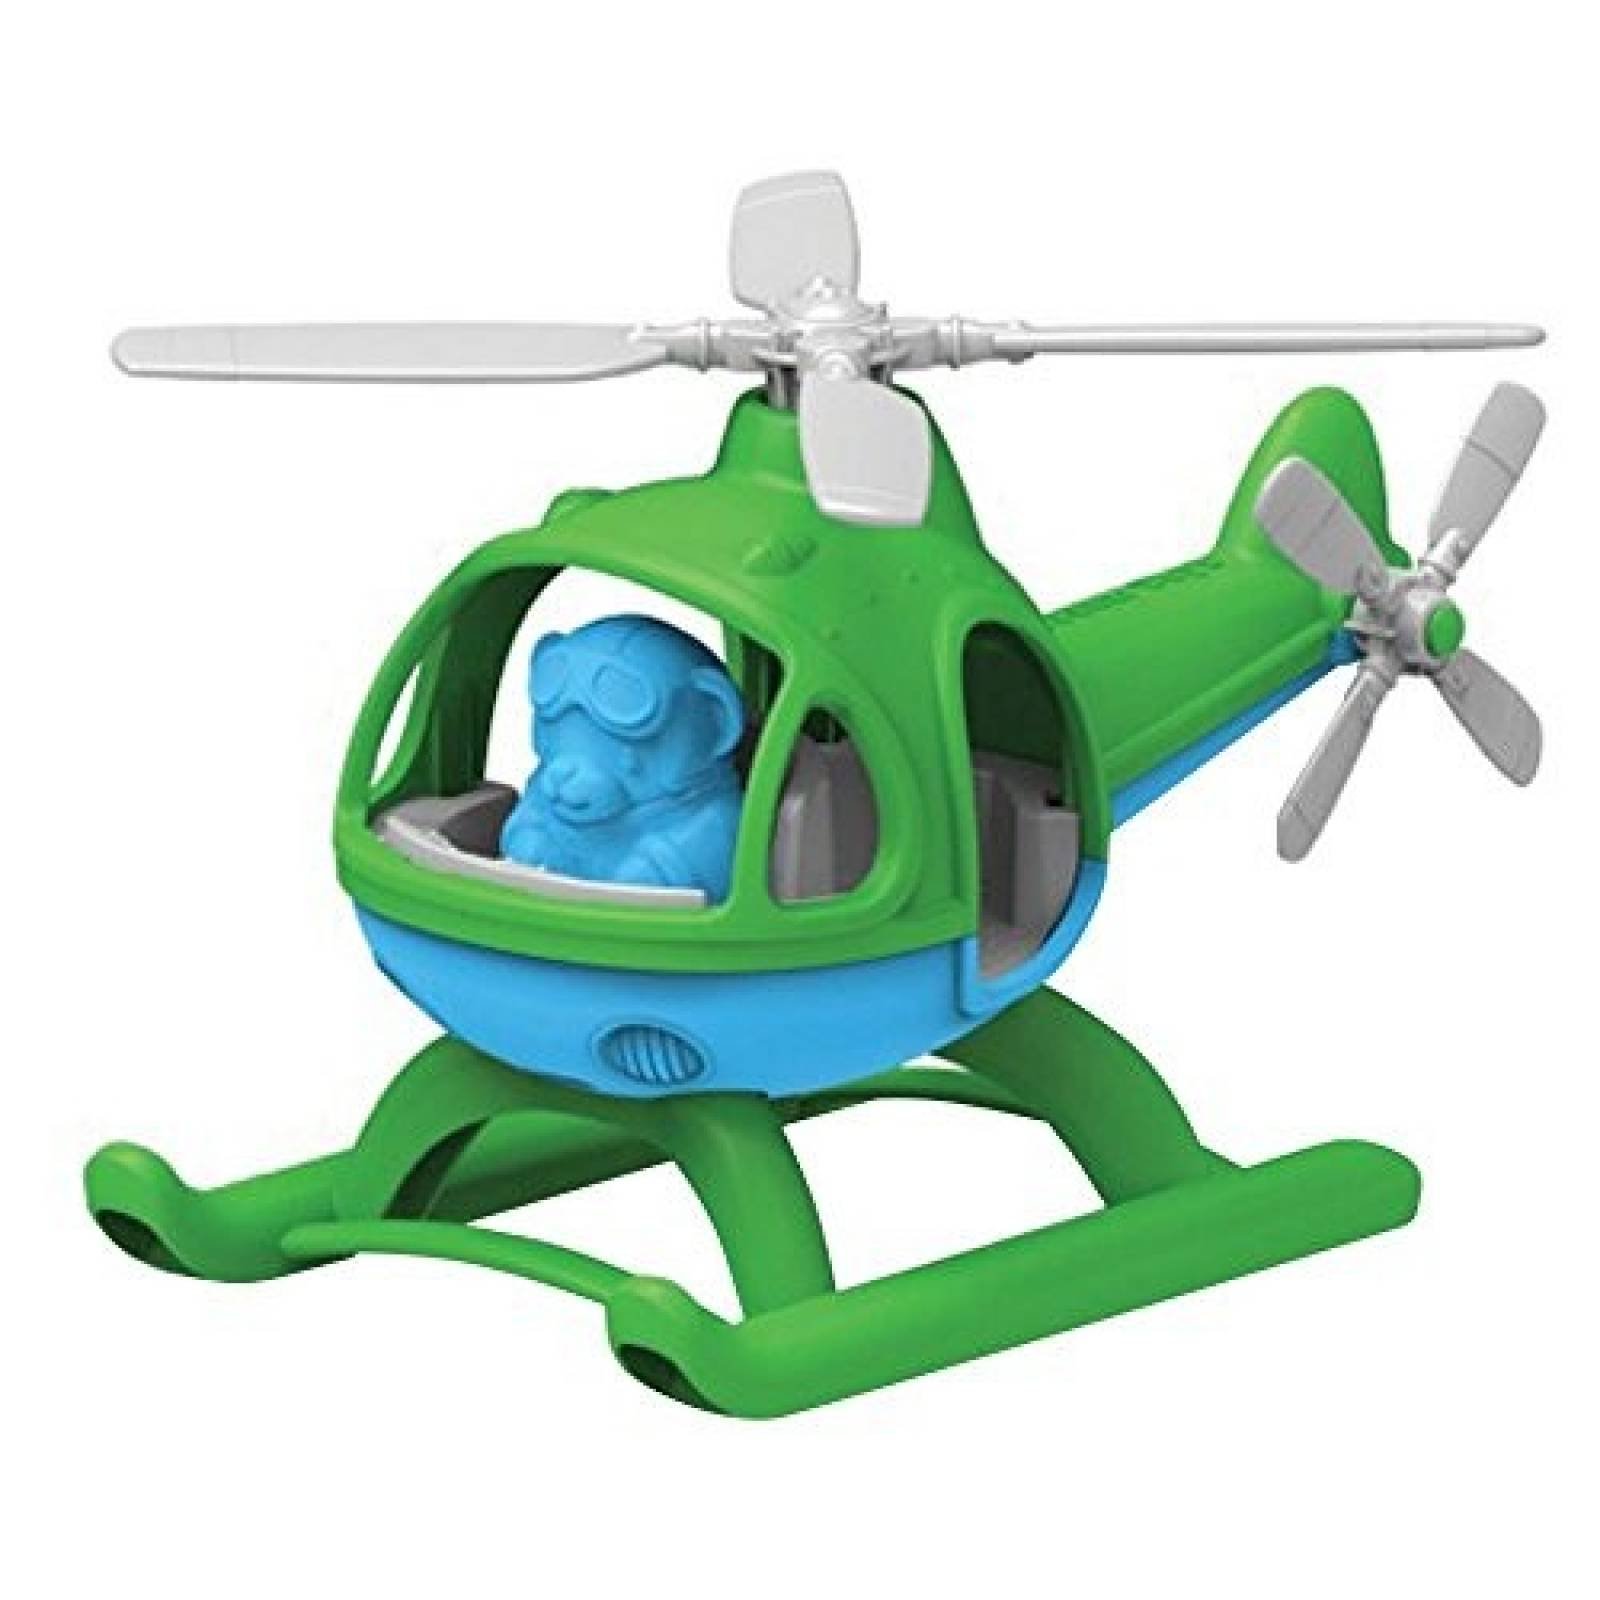 Helicóptero de Juguete Green Toys -Verde/Azul